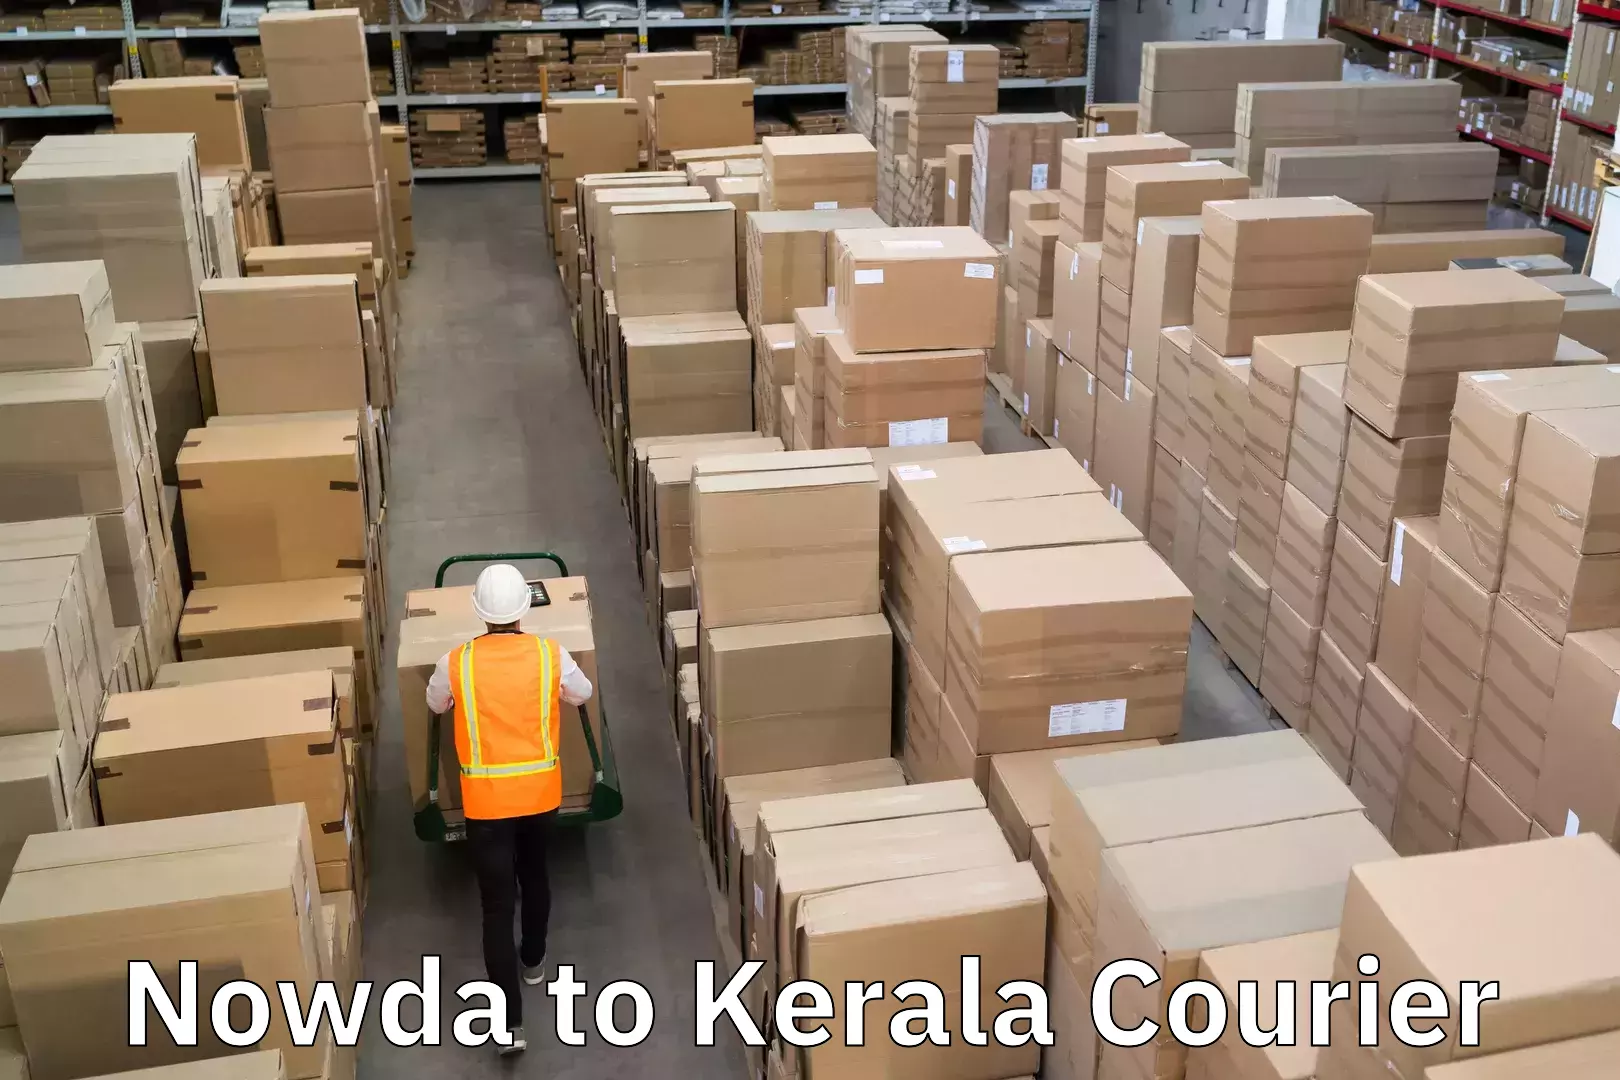 Doorstep delivery service Nowda to Kerala